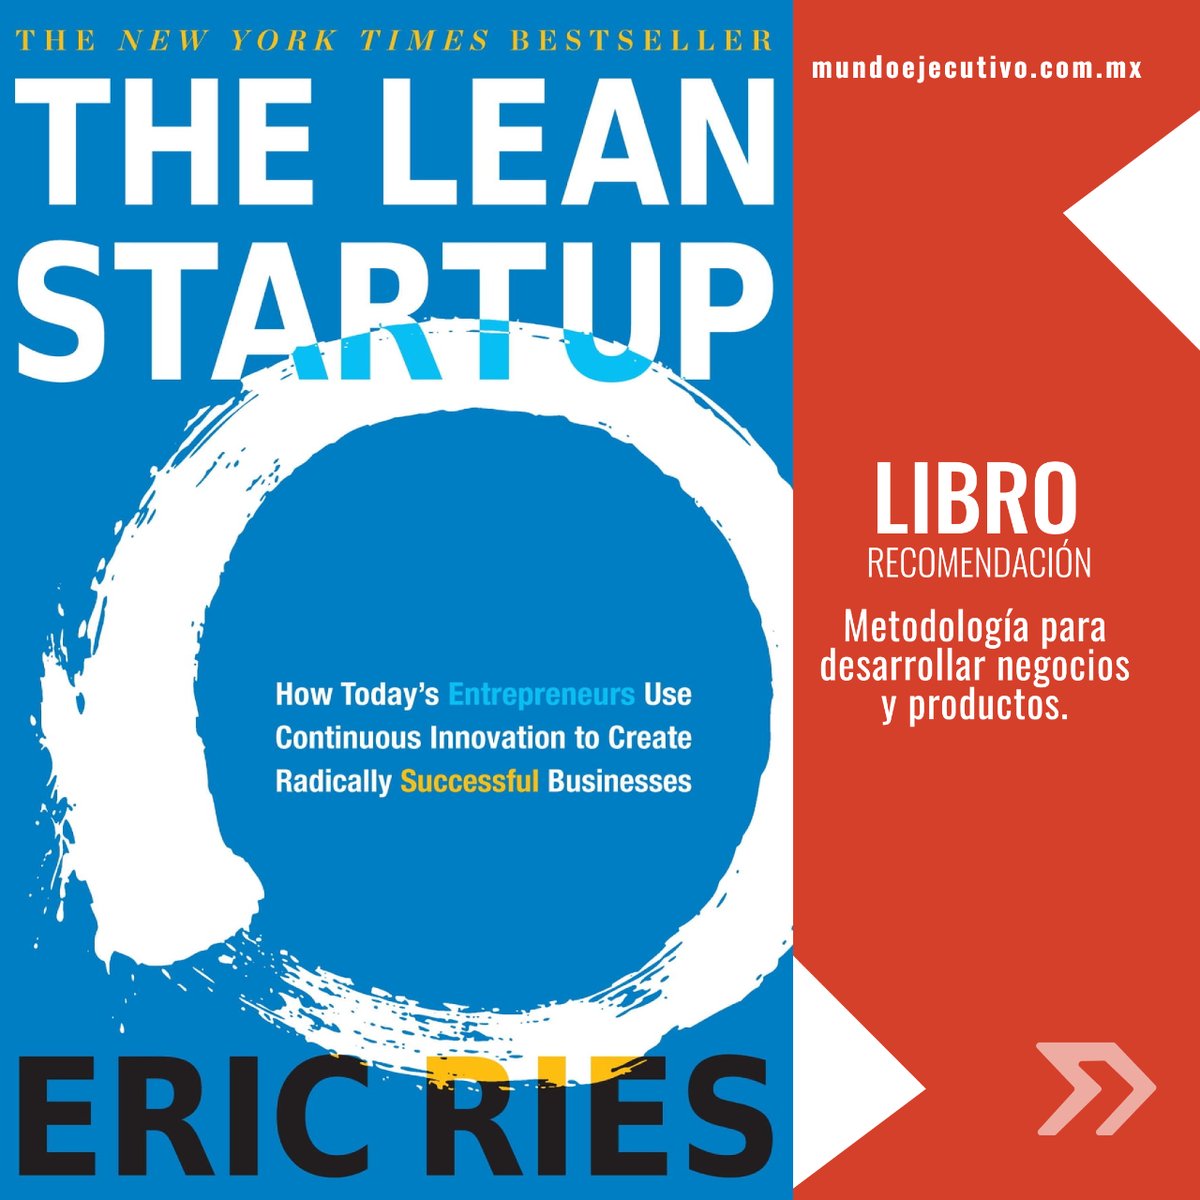 💡📚 ¿Listos para aprender sobre la metodología Lean Startup y revolucionar la manera en que desarrollamos negocios y productos? ¡Descubre más con este libro de Eric Ries! 🚀 #Emprendimiento #Innovación